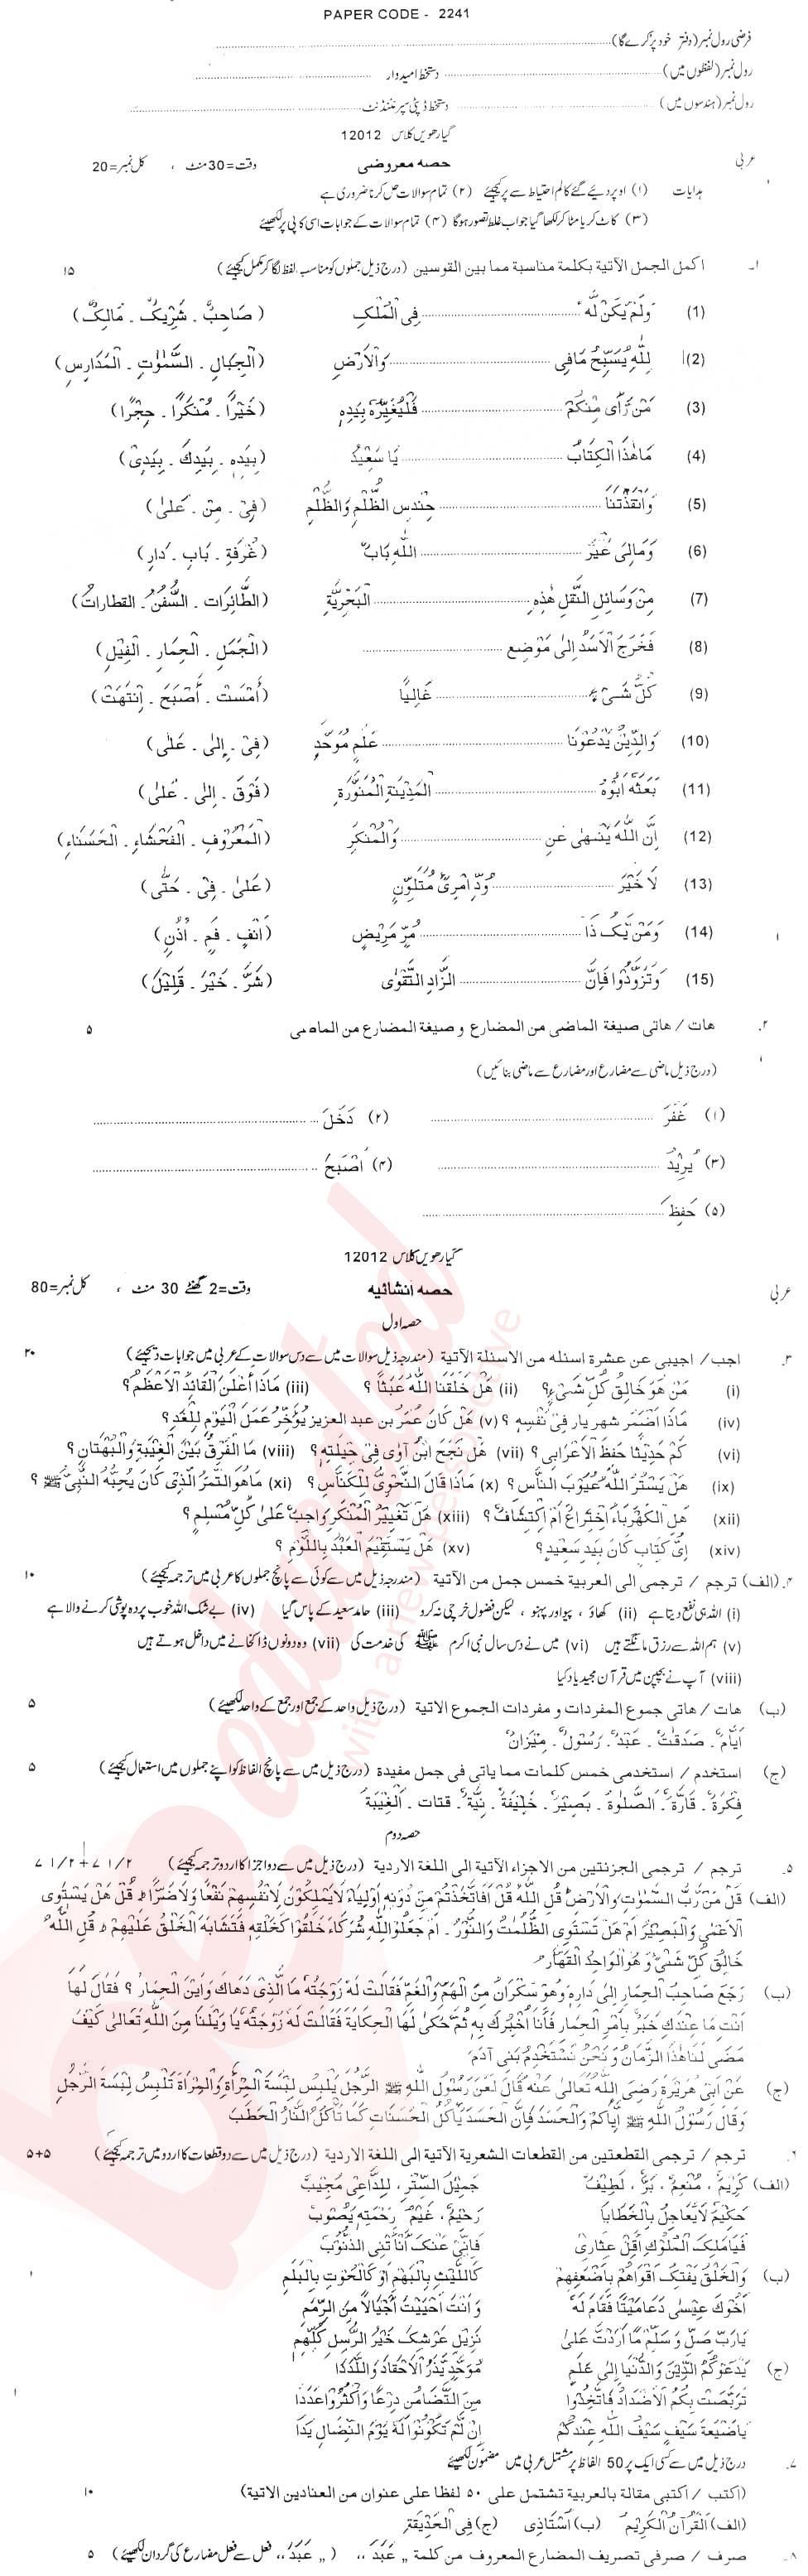 Arabic FA Part 1 Past Paper Group 1 BISE DG Khan 2012